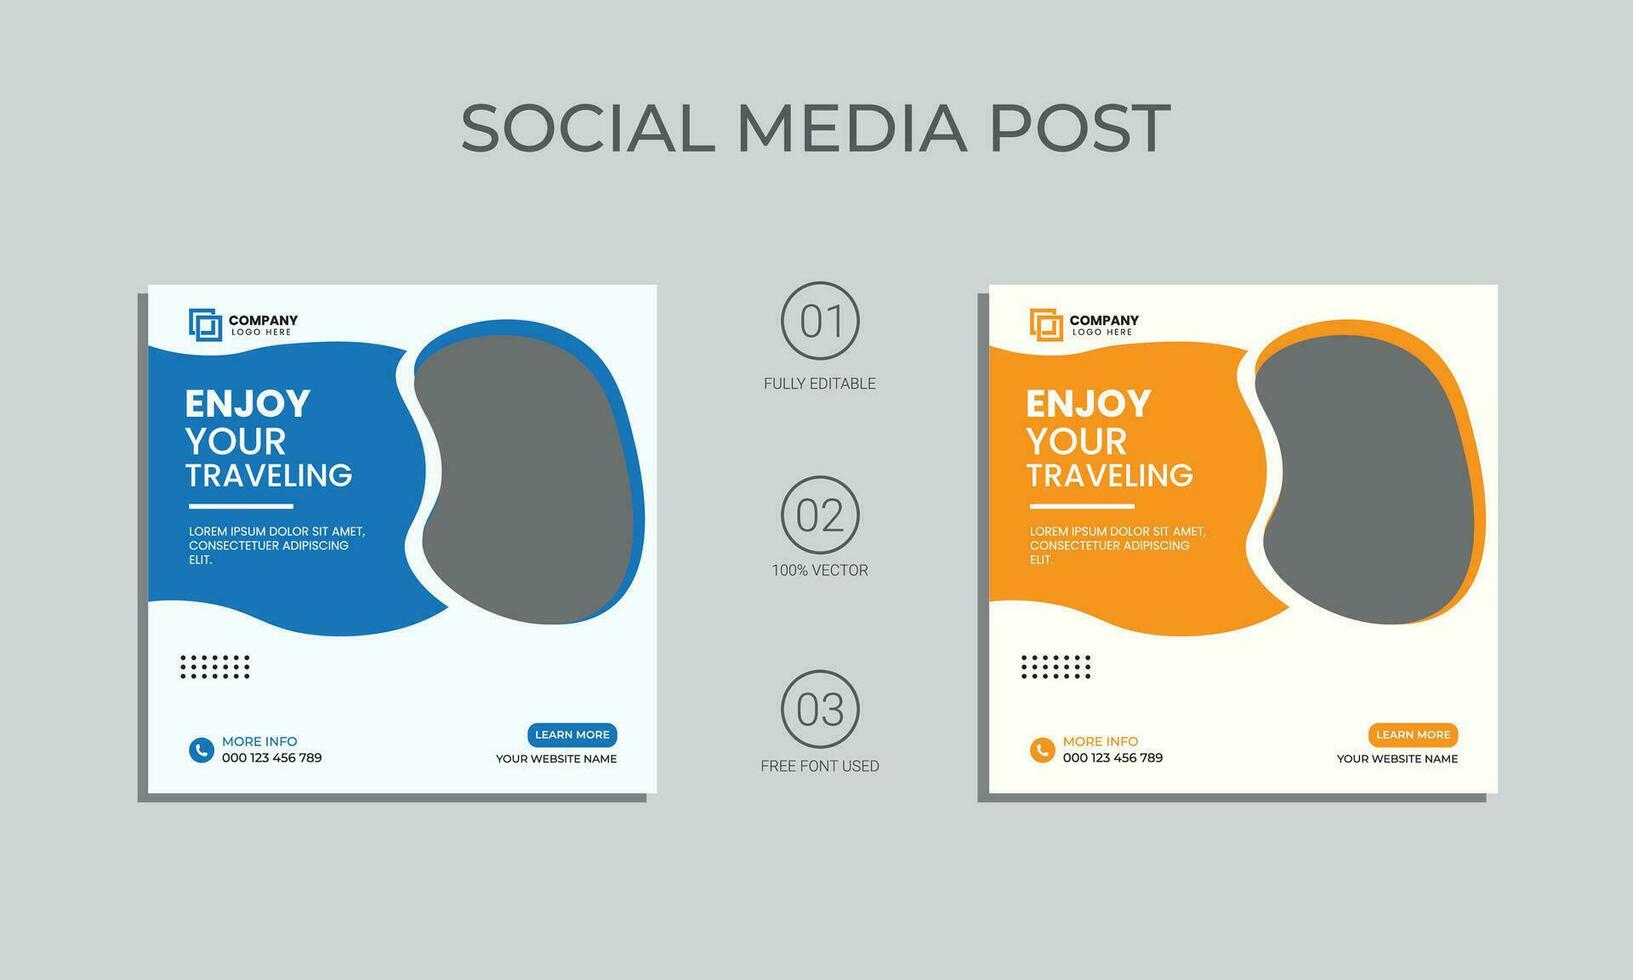 vector de viaje social medios de comunicación enviar diseño. fiesta viajar, verano playa de viaje social medios de comunicación enviar o web bandera modelo diseño. turismo negocio márketing póster con resumen forma.